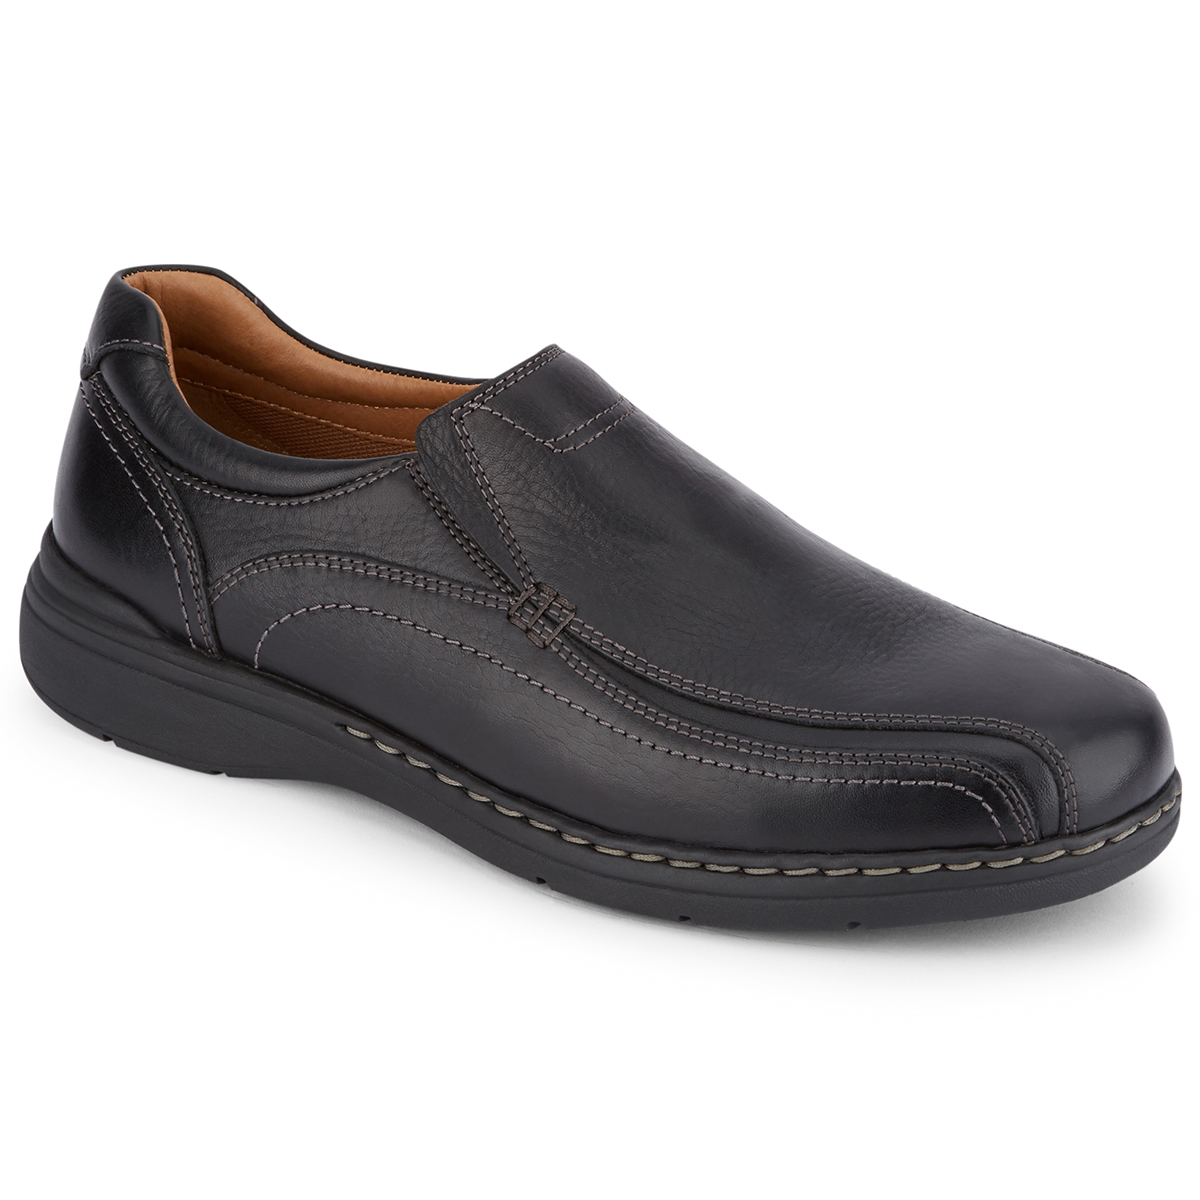 Dockers Men's Mosley Slip-On Shoe - Black, 13